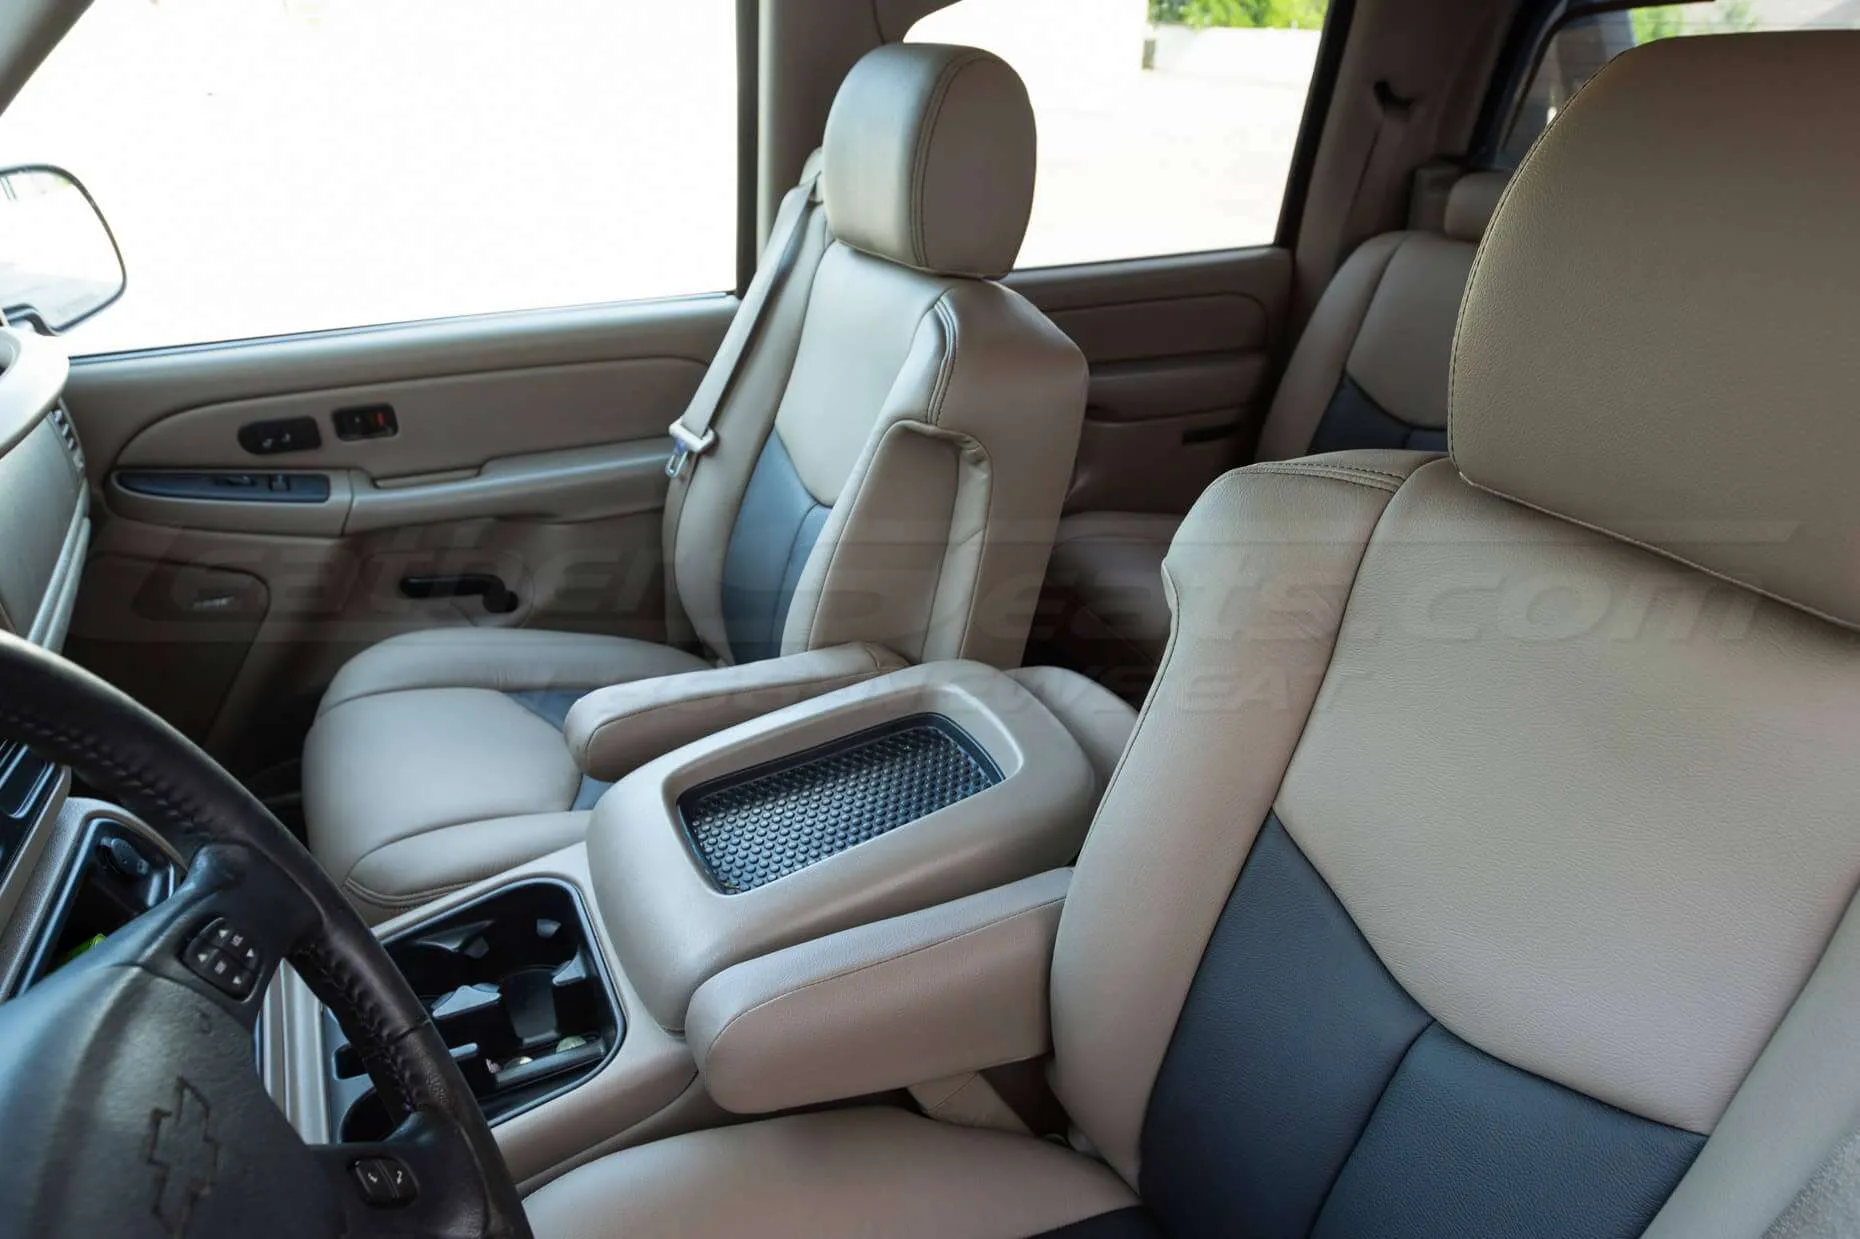 03-06 Chevrolet Avalanche Installed Upholstery Kit - Desert & Black - Front Seats